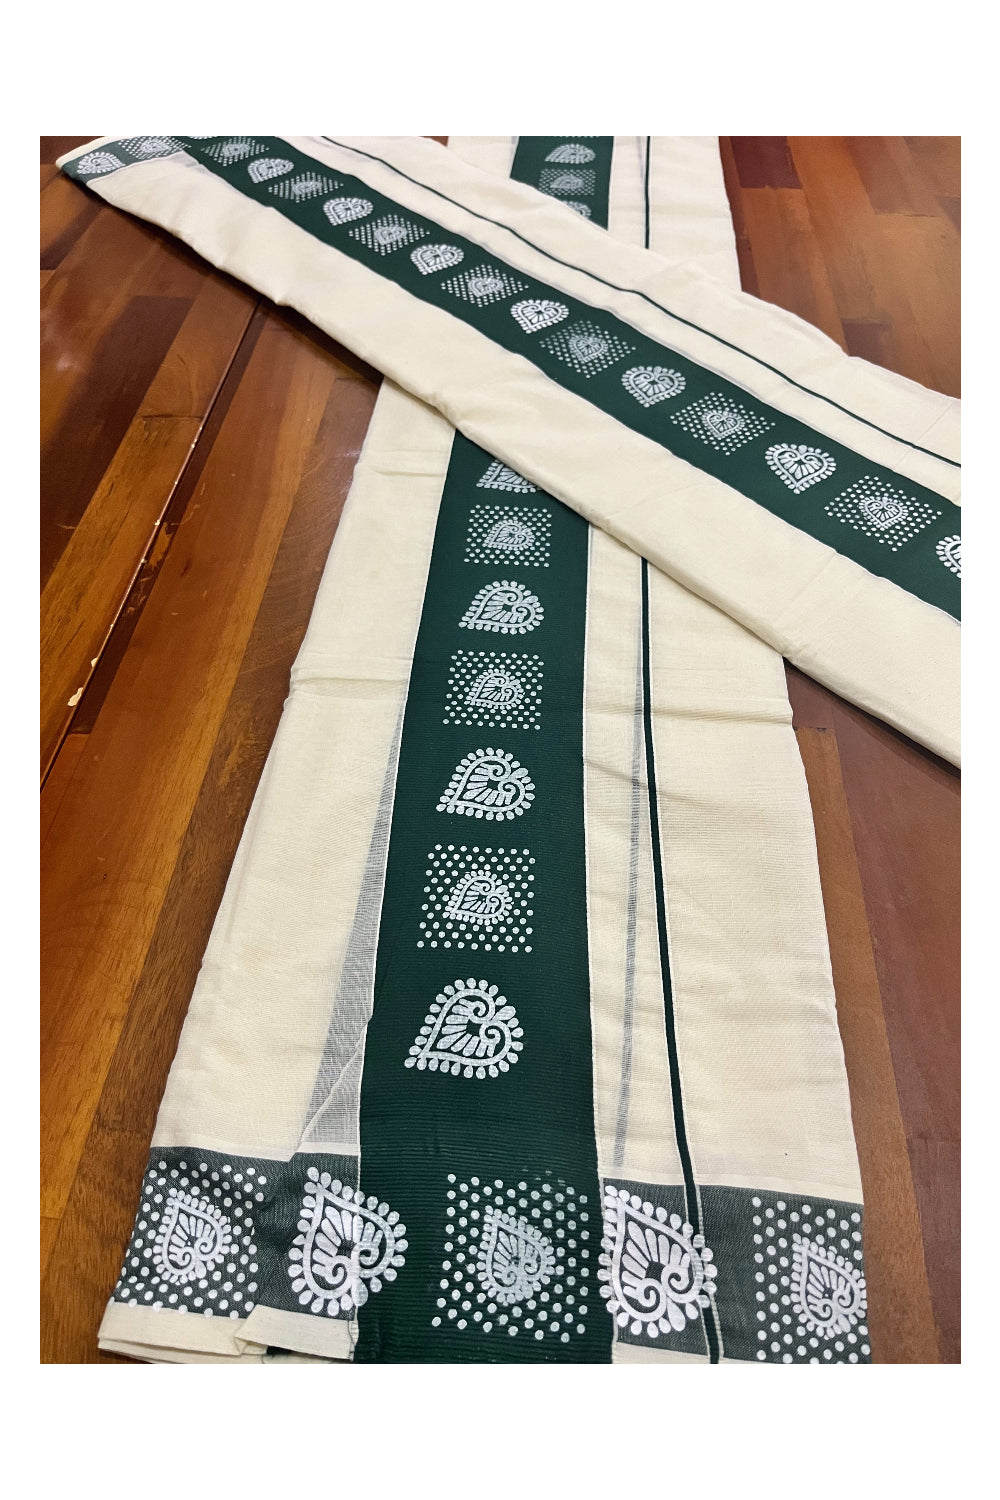 Kerala Cotton Single Set Mundu (Mundum Neriyathum) with Block Prints in Dark Green Border